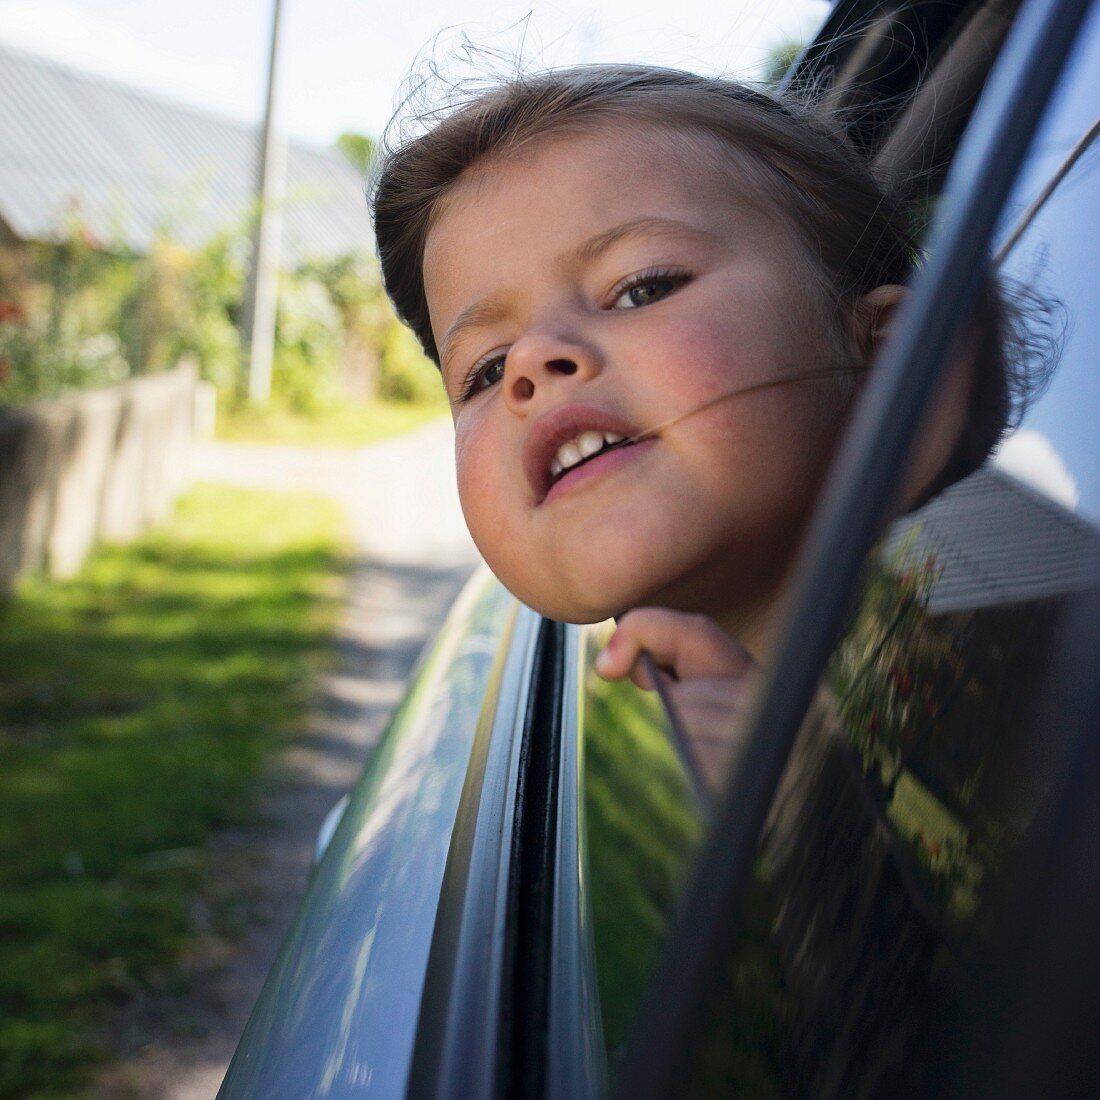 Kleines Mädchen hält Kopf aus Autofenster